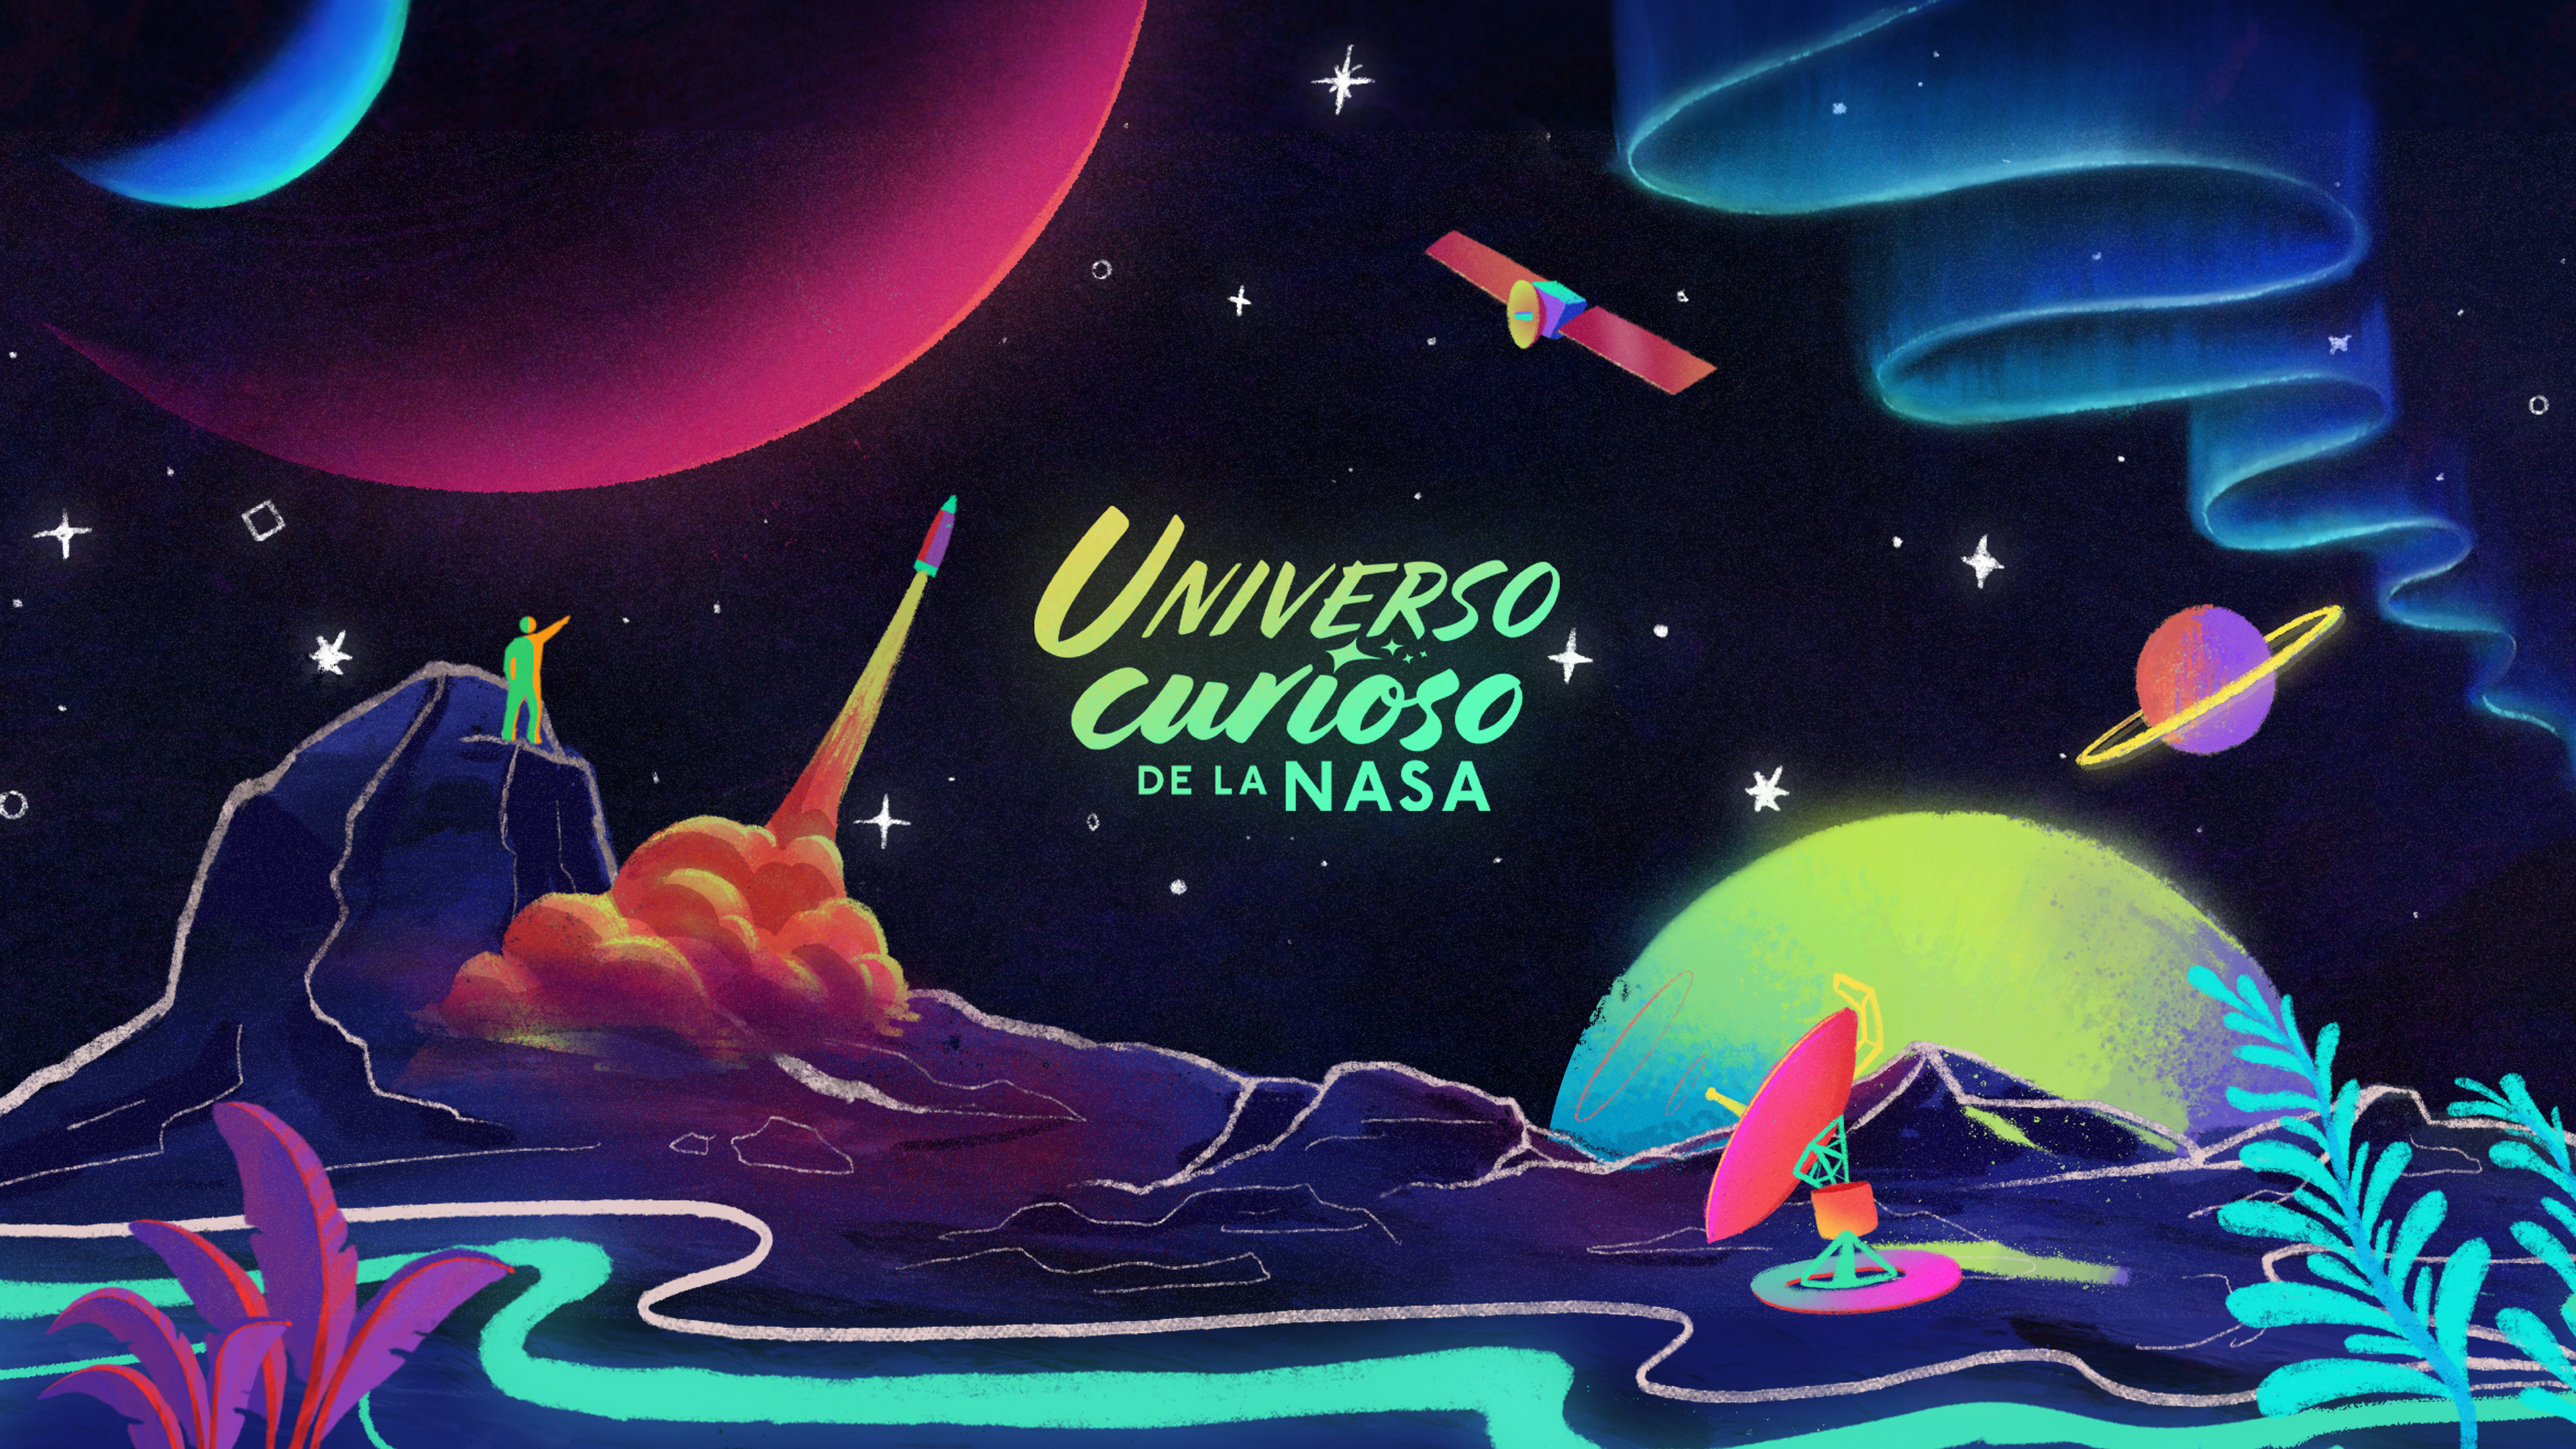 Una imagen rectangular muestra en el centro un logo que dice “Universo curioso de la NASA” en amarillo y verde claro brillantes.